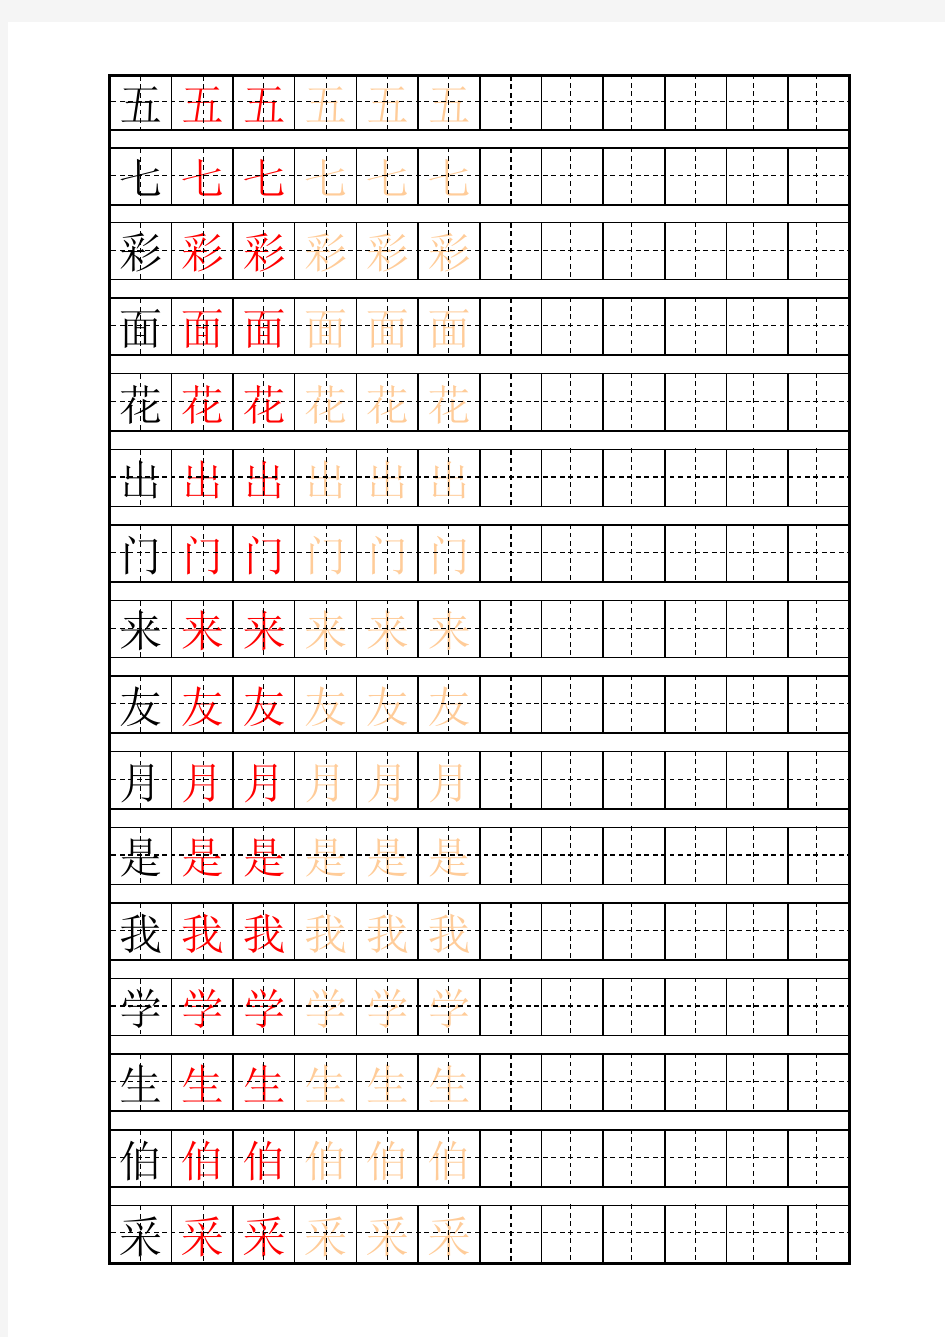 多种书法练字田字格及自制描红字帖模板